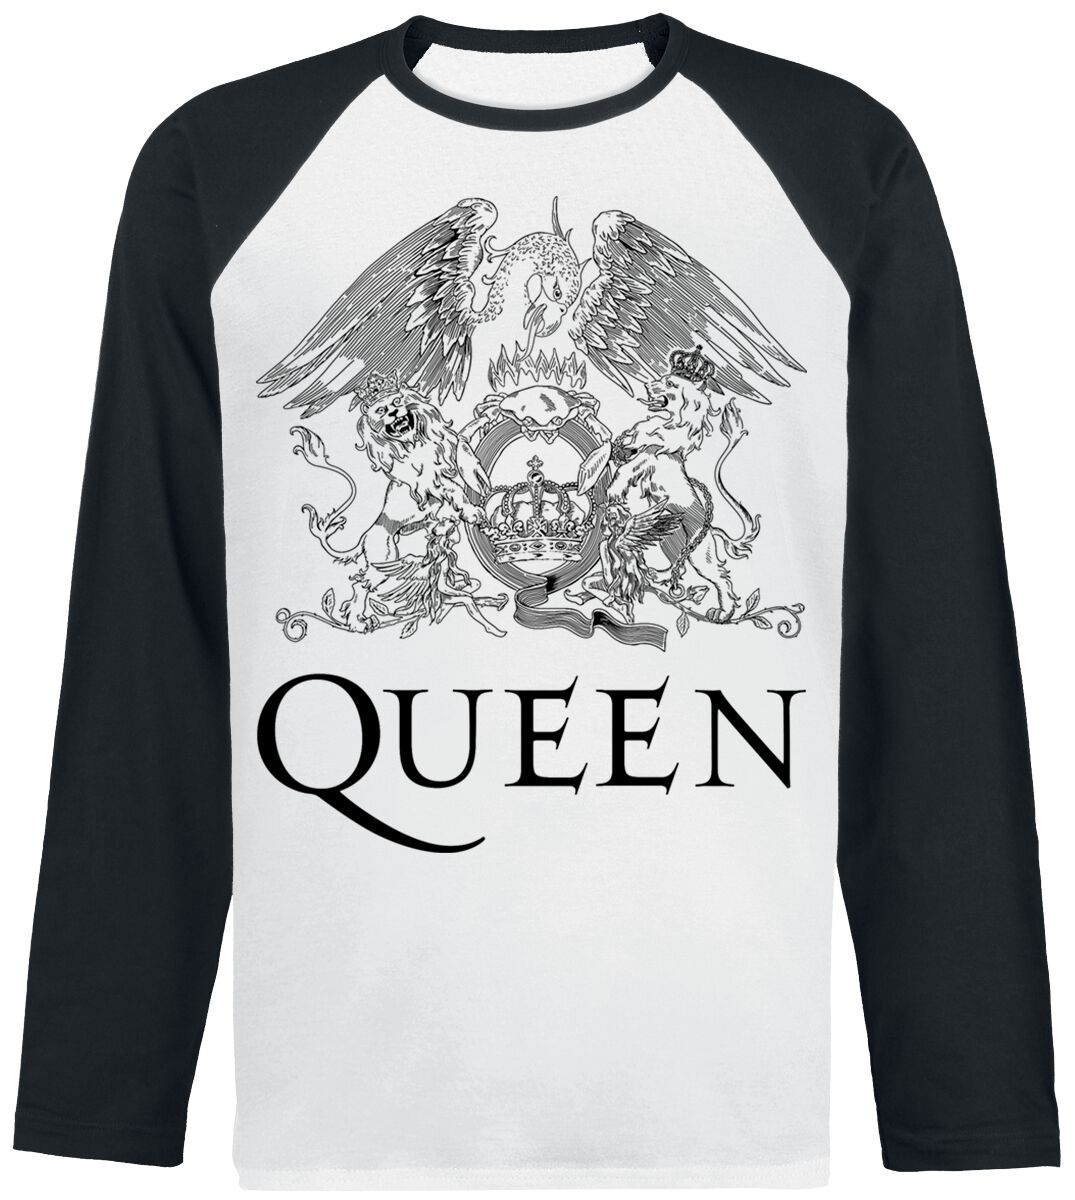 Queen Crest Vintage Langarmshirt weiß schwarz in M